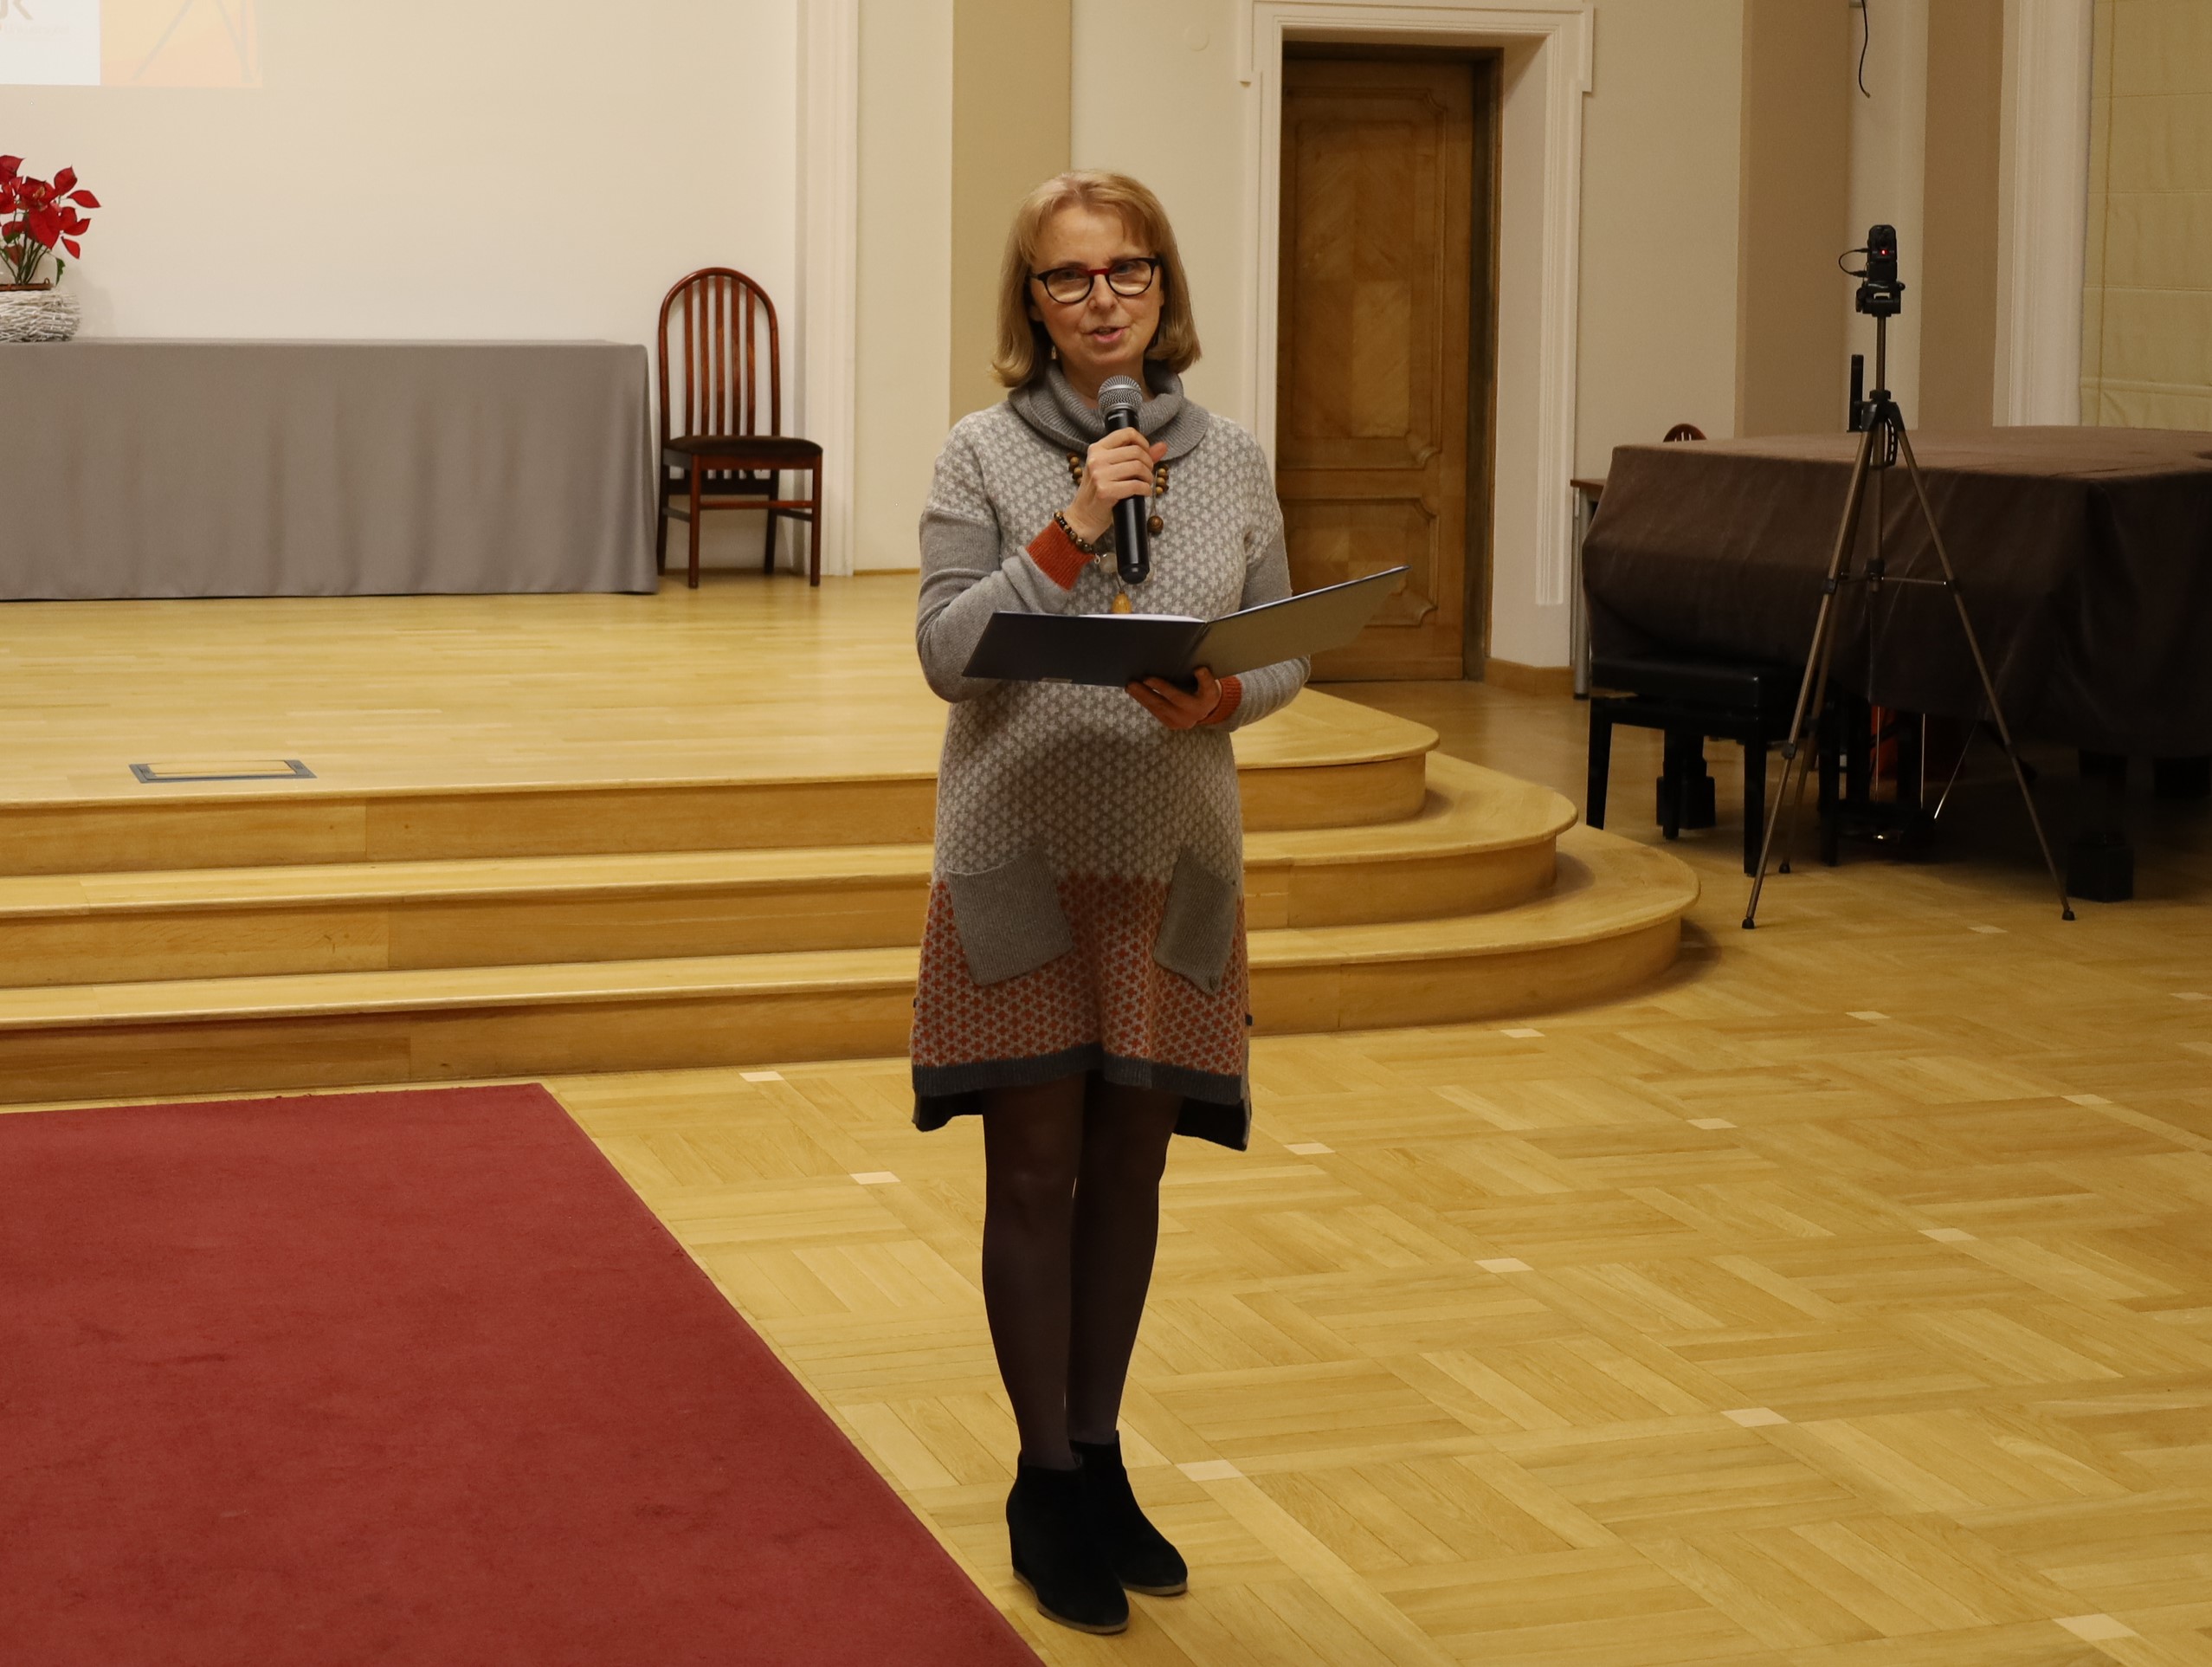 Na zdjęciu dr hab. prof. UJK Monika Szpringer, kierownik Centrum Wsparcia Psychologicznego i Psychoedukacji UJK, która przemawia do zebranych.